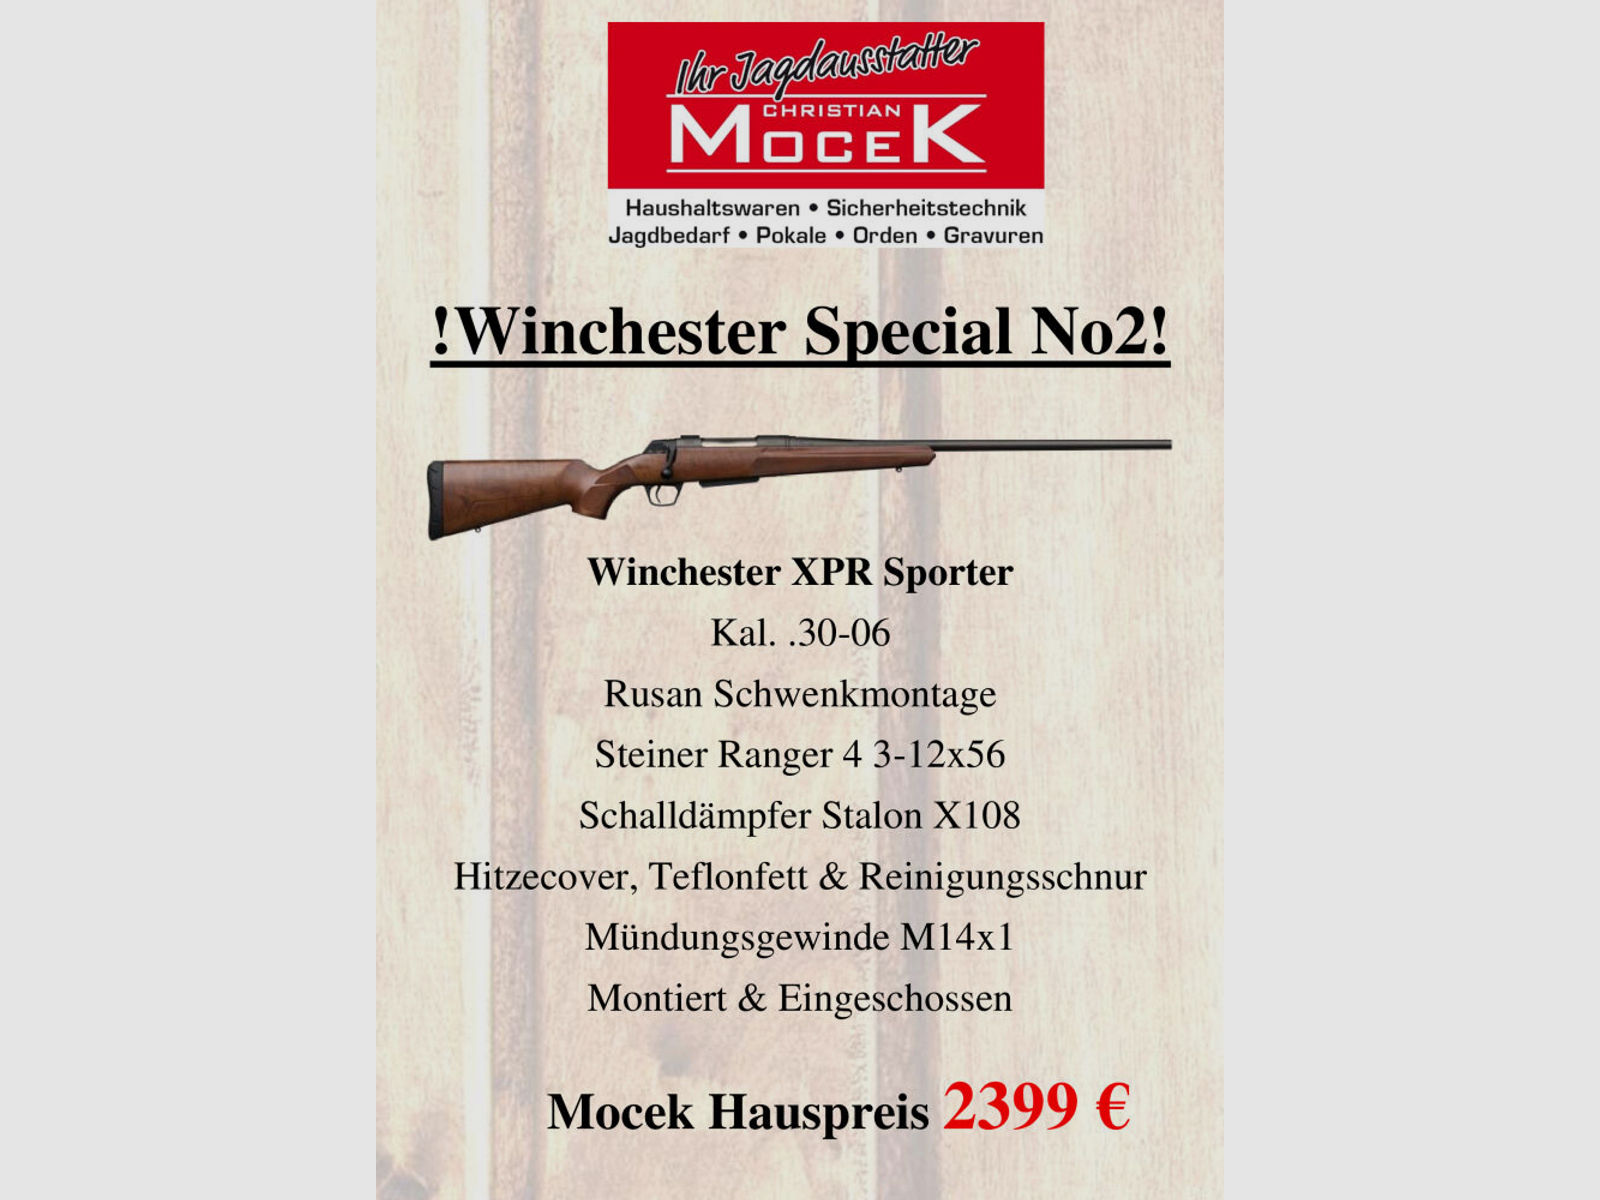 Winchester	 XPR Sporter, mit Steiner Ranger 4 3-12x56